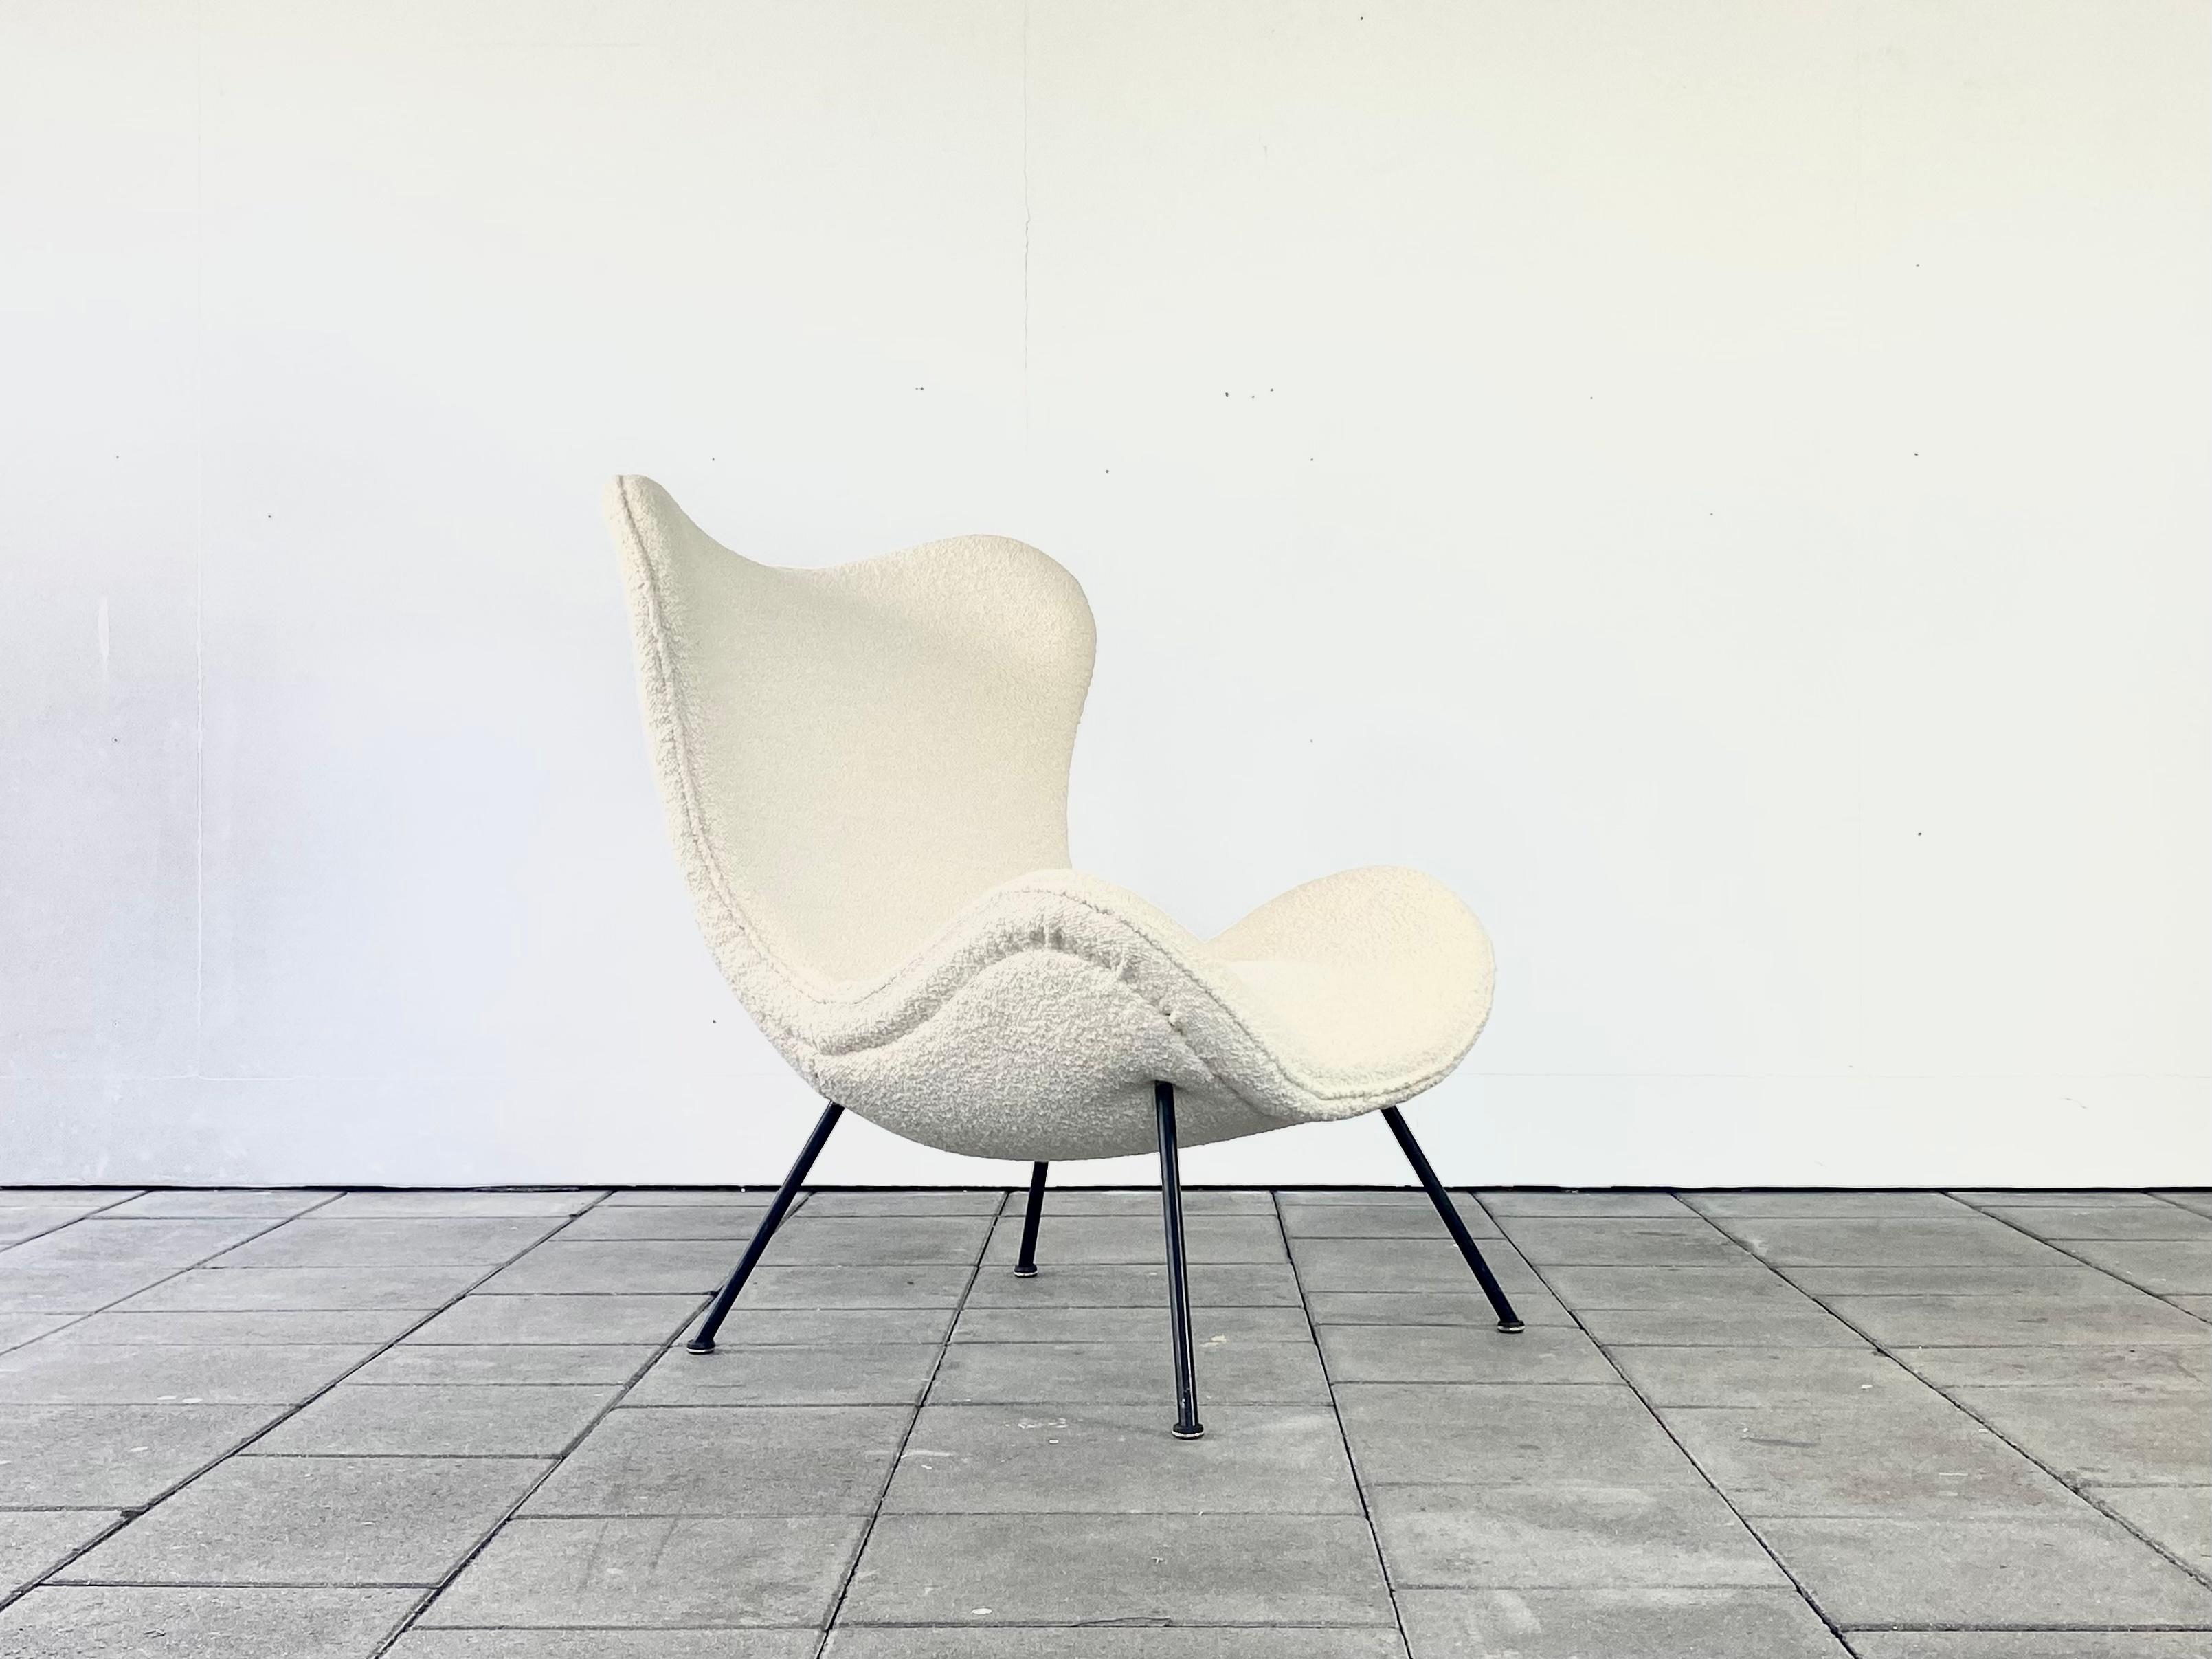 Organischer Sessel Madame aus den 1950er Jahren aus Boucle, entworfen von Fritz Neth 1955

Außergewöhnlicher Lounge-Sessel mit hoher Rückenlehne, entworfen von Fritz Neth für Correcta im Jahr 1955. Neu gepolstert mit hochwertigem, cremefarbenem